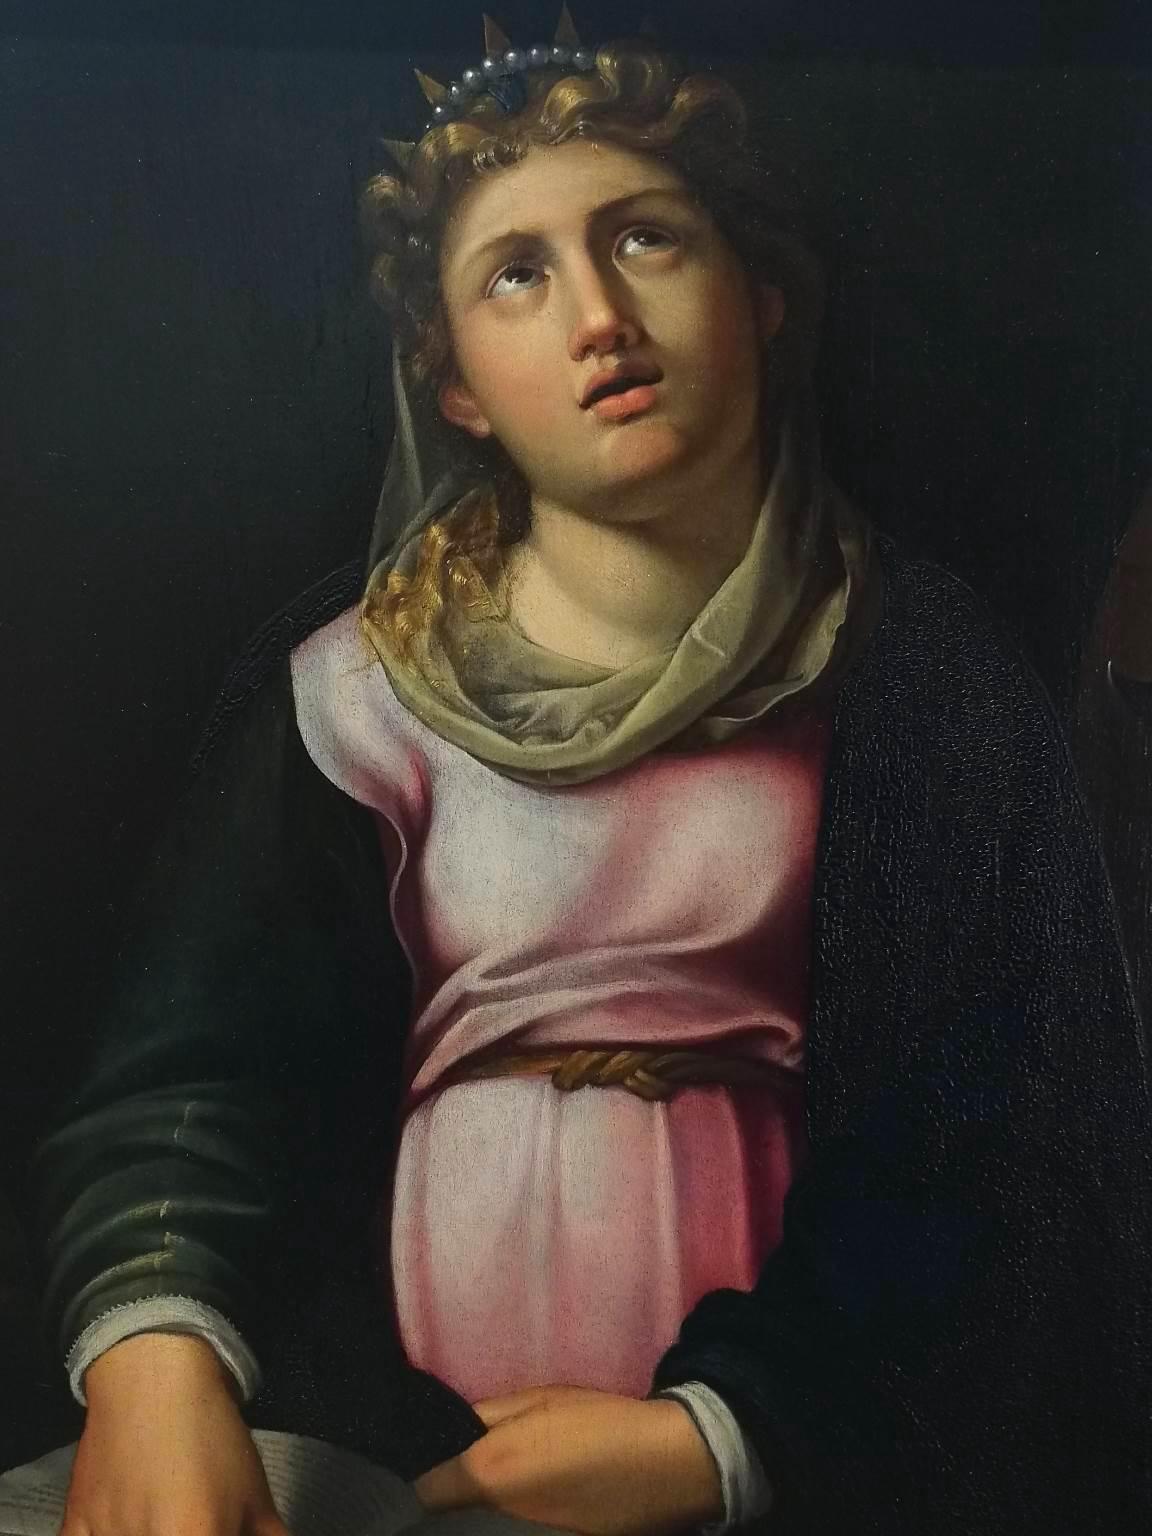 Le tableau, dont le sujet est Sainte Catherine d'Artistics avec la roue brisante utilisée pour son martyre, peut être attribué à l'artiste maniériste de la région d'Émilie-Romagne Luca Longhi grâce à diverses similitudes avec ses œuvres. 
Par